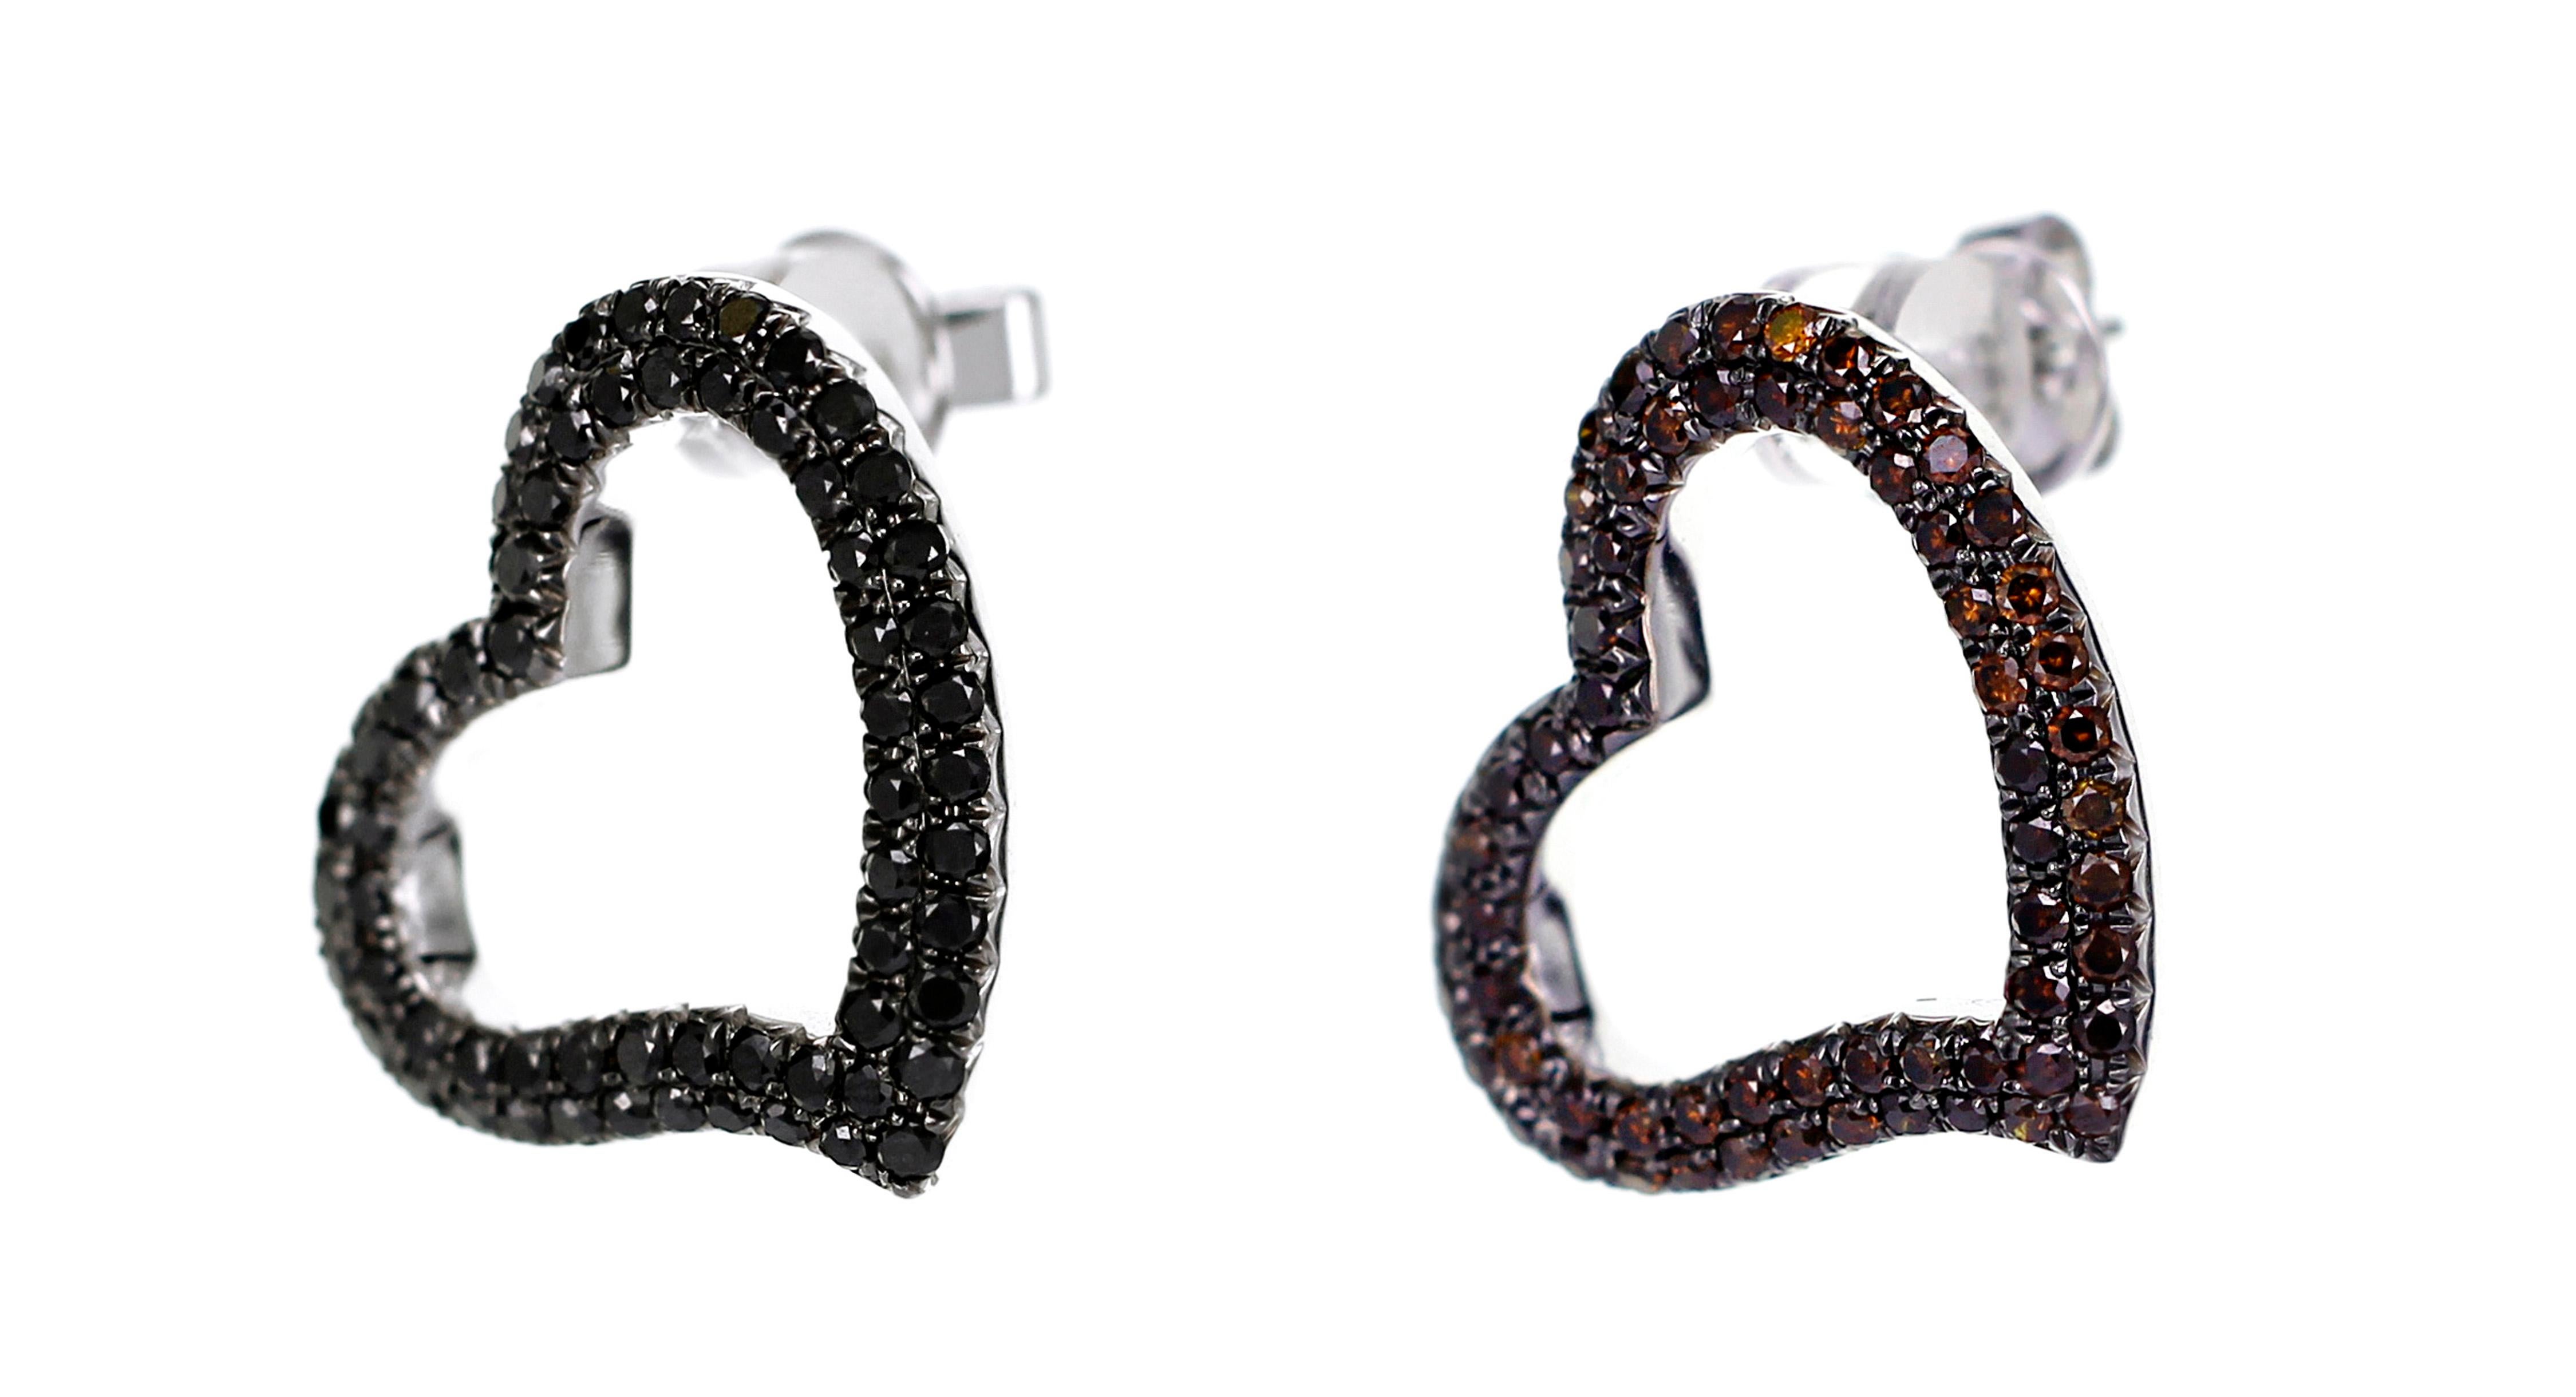 Eine seltene Kombination von 0,84 Karat verbrannter natürlicher Diamanten mit 0,91 Karat schwarzer Diamanten sind in diesen herzförmigen Ohrringen verarbeitet. Die  ohrring kann getragen werden  zusammen oder kann als einzelner Ohrschmuck verwendet